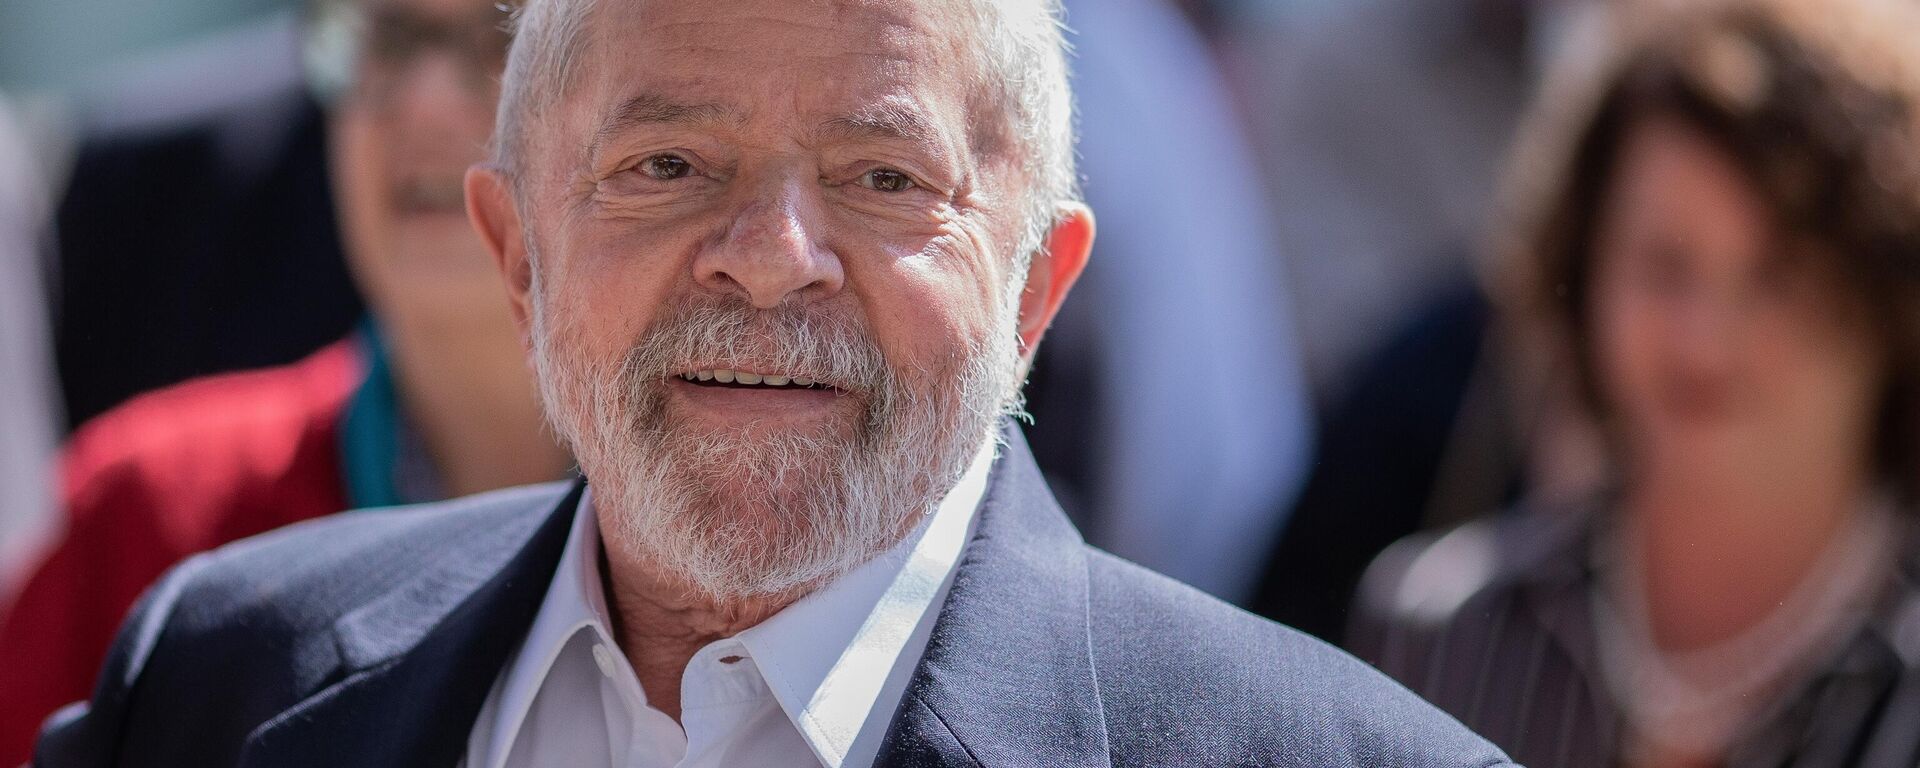 O ex-presidente Lula (PT) em Juiz de Fora, Minas Gerais, em 11 de maio de 2022 - Sputnik Brasil, 1920, 26.05.2022